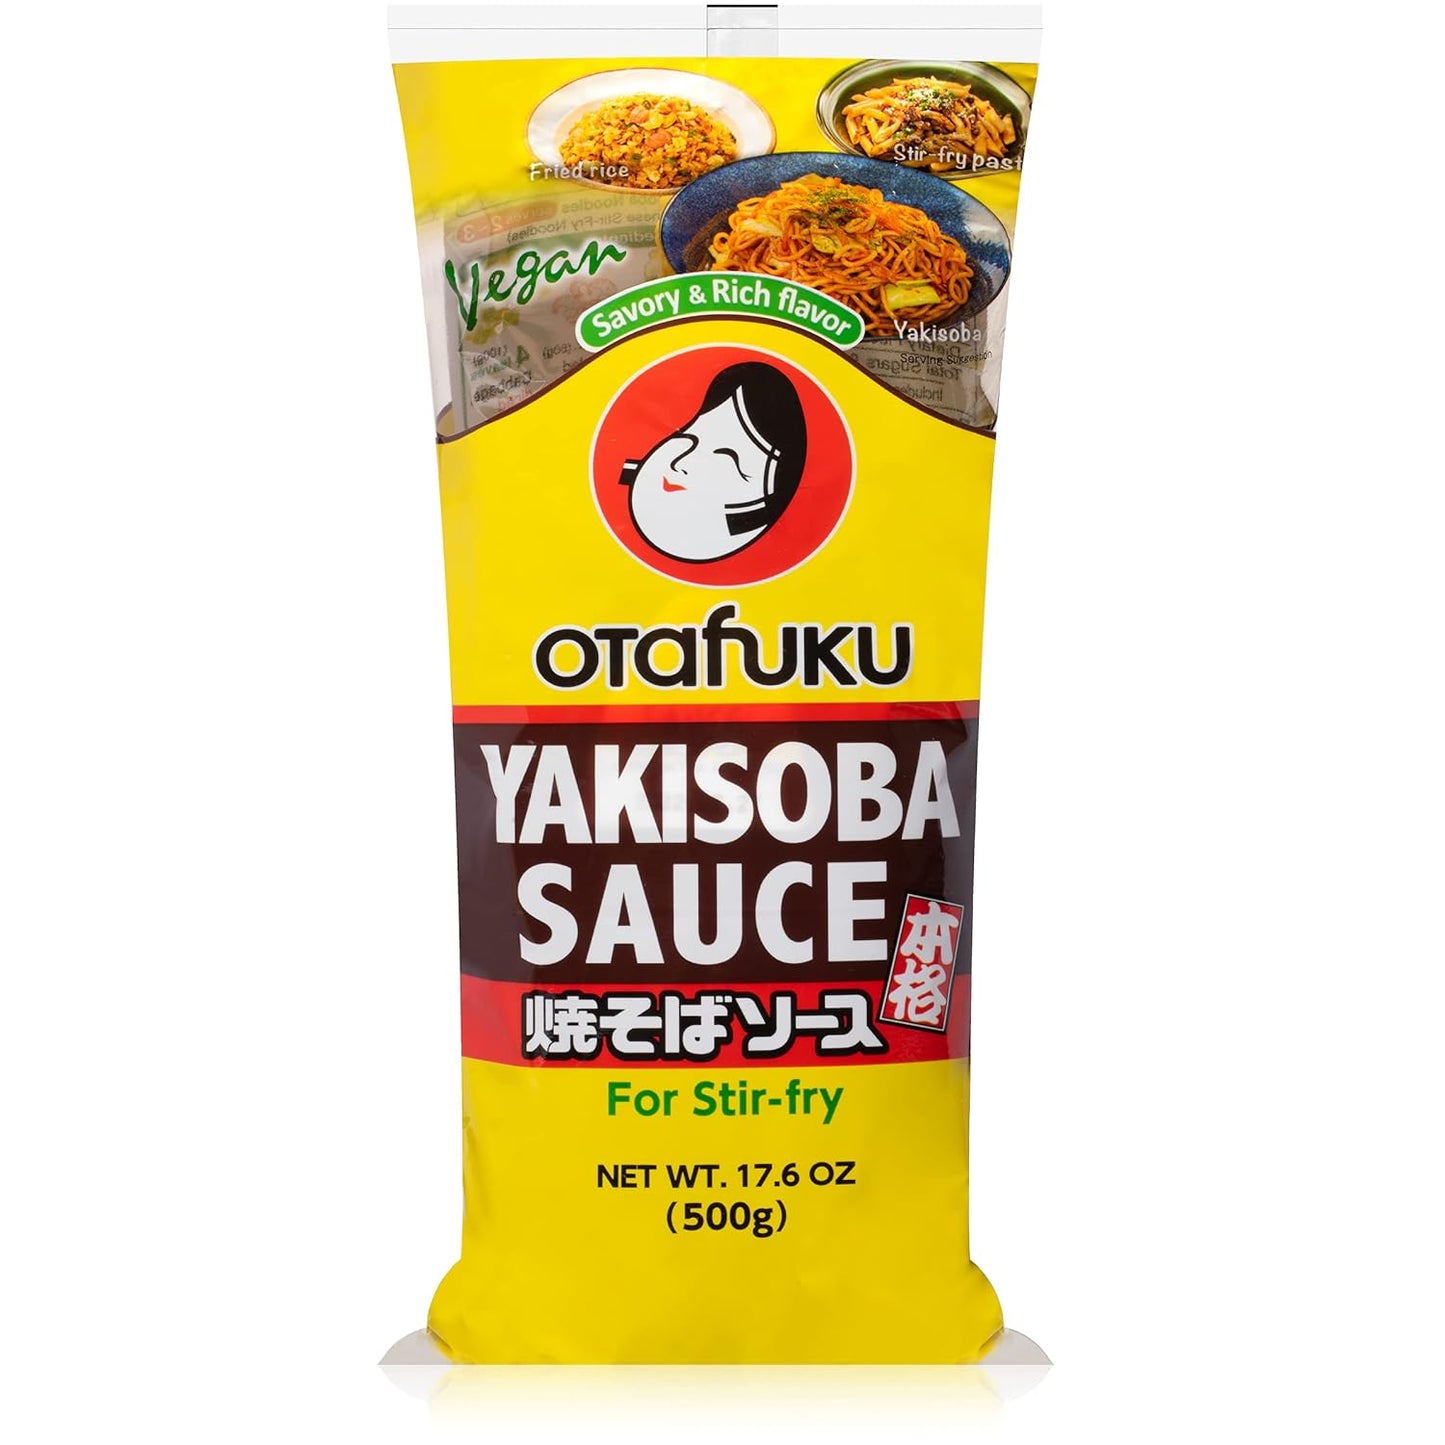 Otafuku Yakisoba Sauce For Stir Fry 10.6 oz